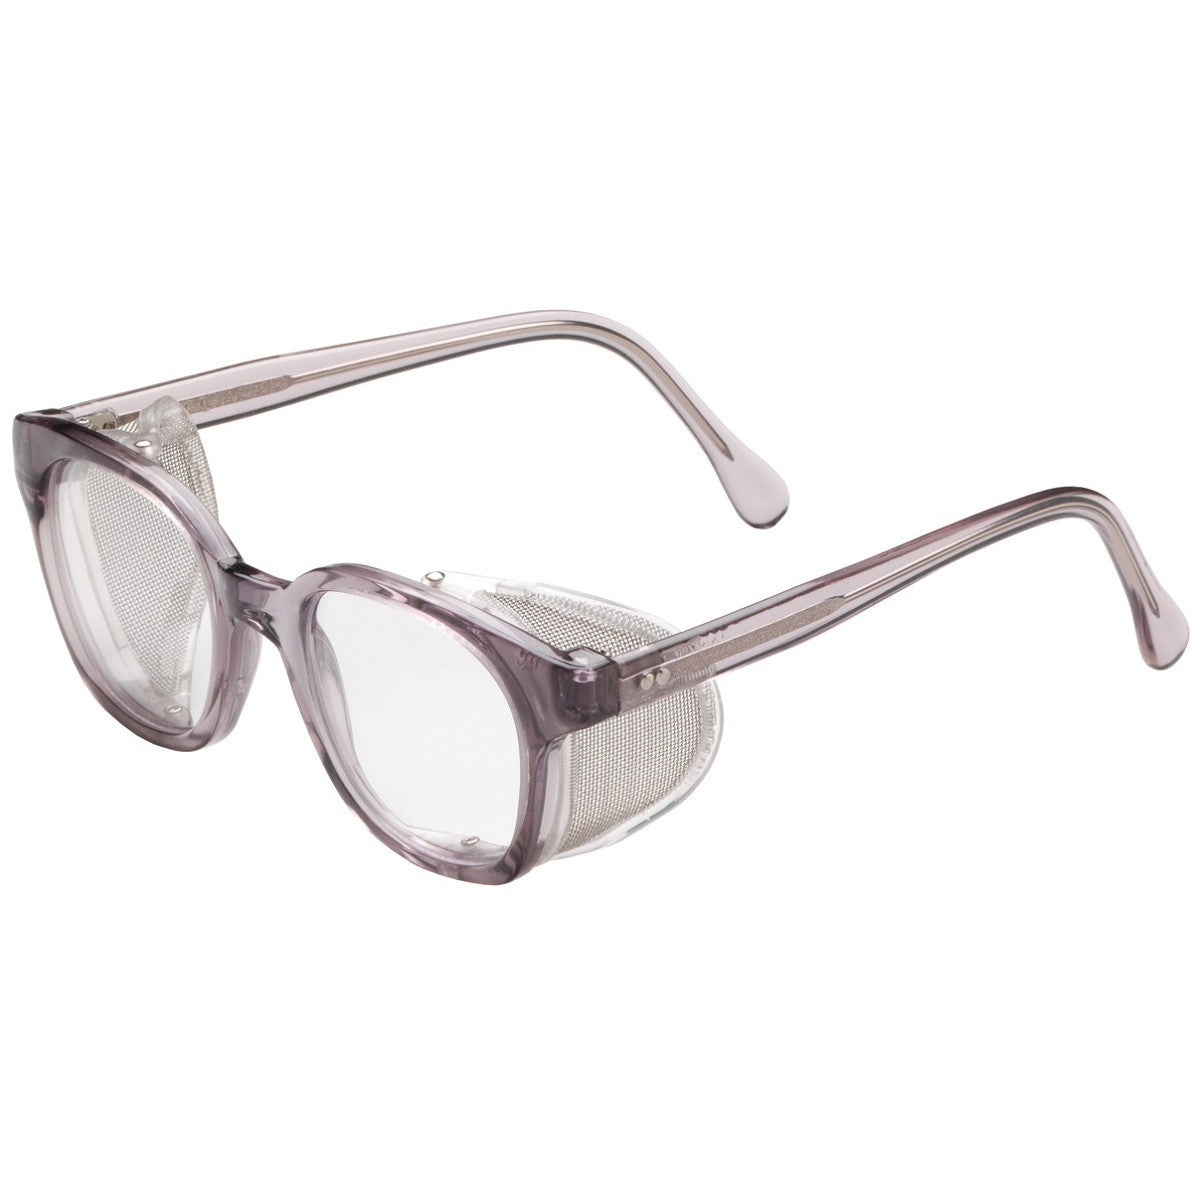 safety glasses, vintage safety glasses, shop glasses, electrician glasses, old school shop glasses